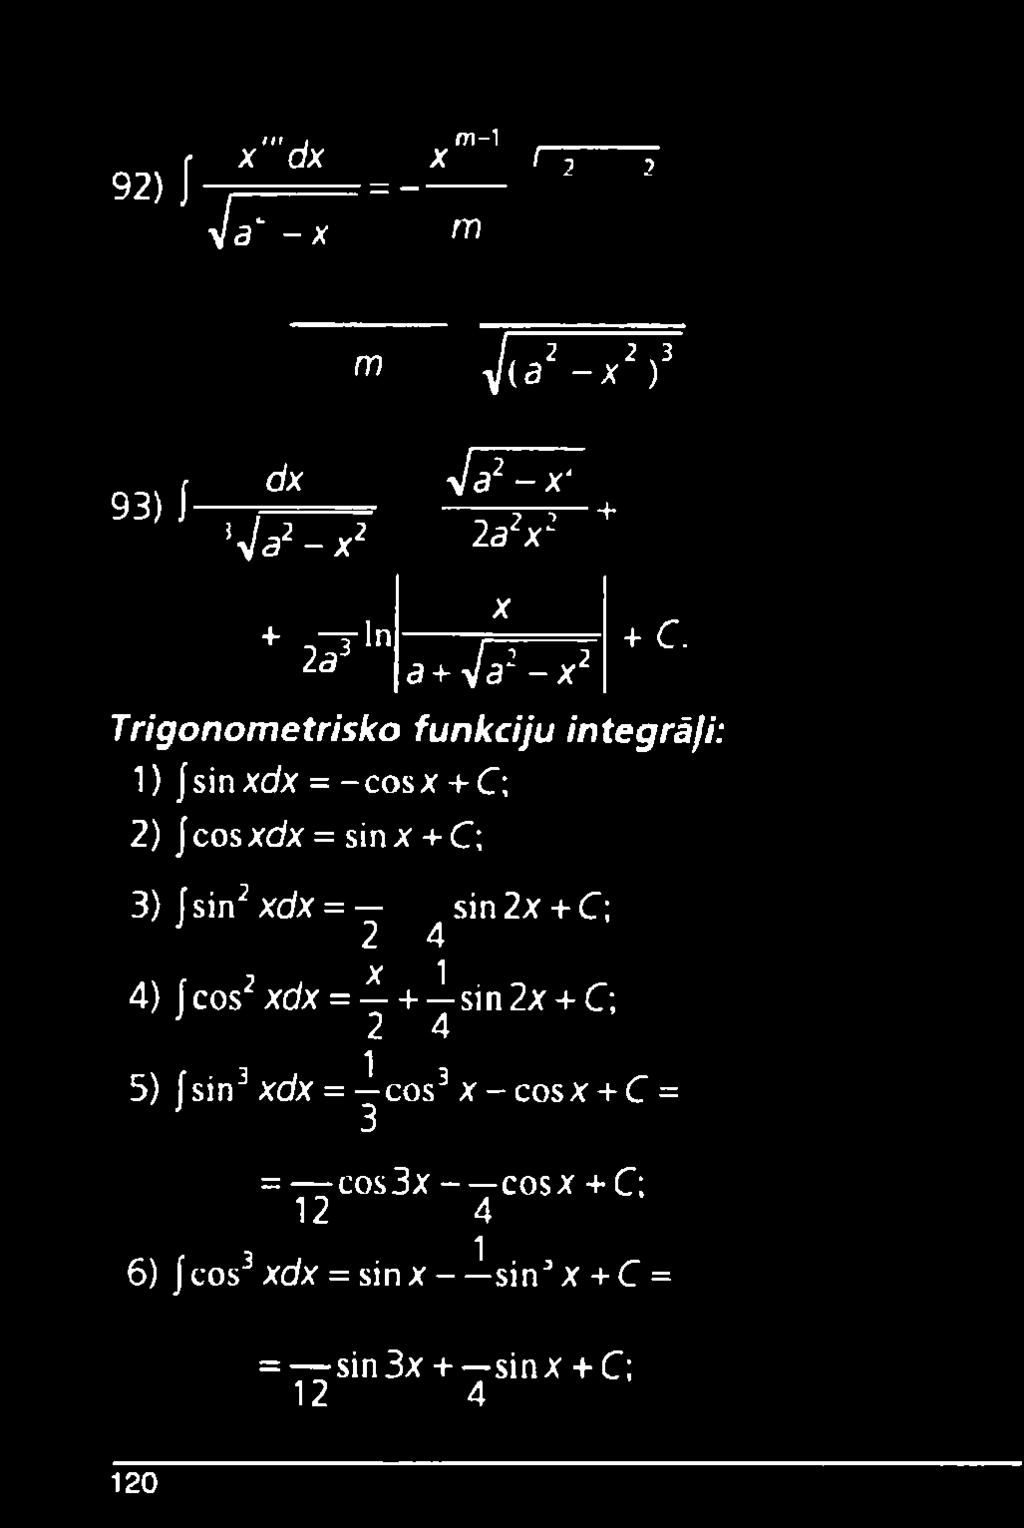 Trigonometrisko funkciju integrāļi: 1) Jsinxdx =-cosx+ C; 2) Jcosxdx = sinx + C; 3) fsin2xdx = sin2x